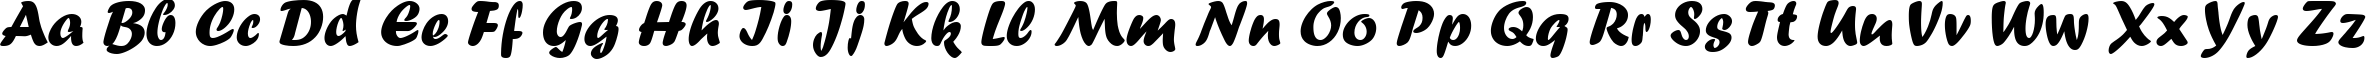 Пример написания английского алфавита шрифтом Forte